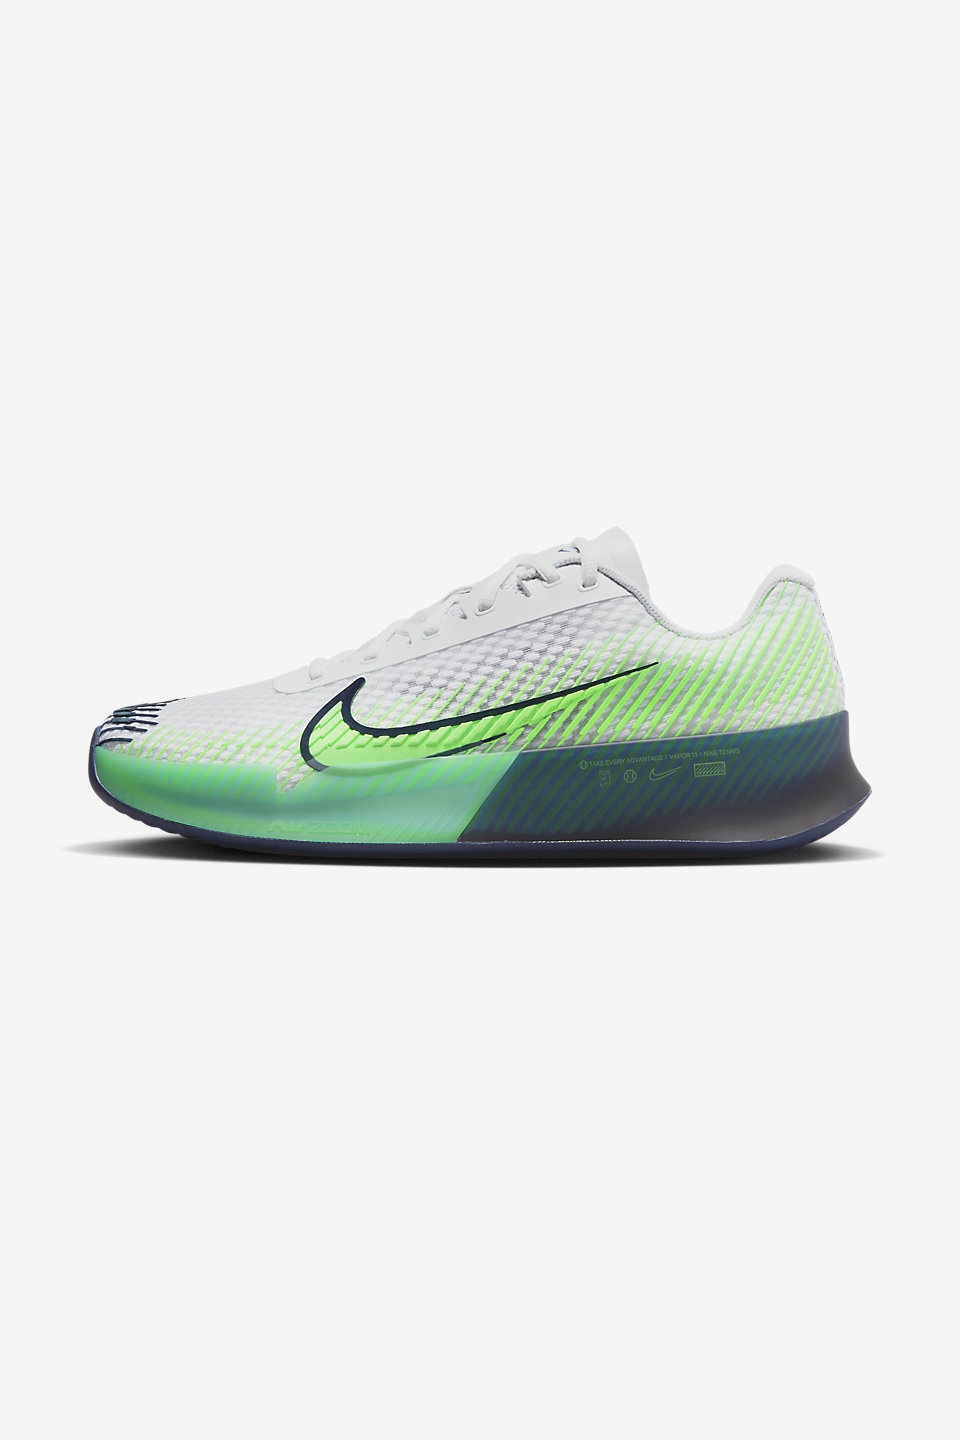 NIKE - NikeCourt Air Zoom Vapor 11 Erkek Toprak Kort (Clay) Tenis Ayakkabısı 